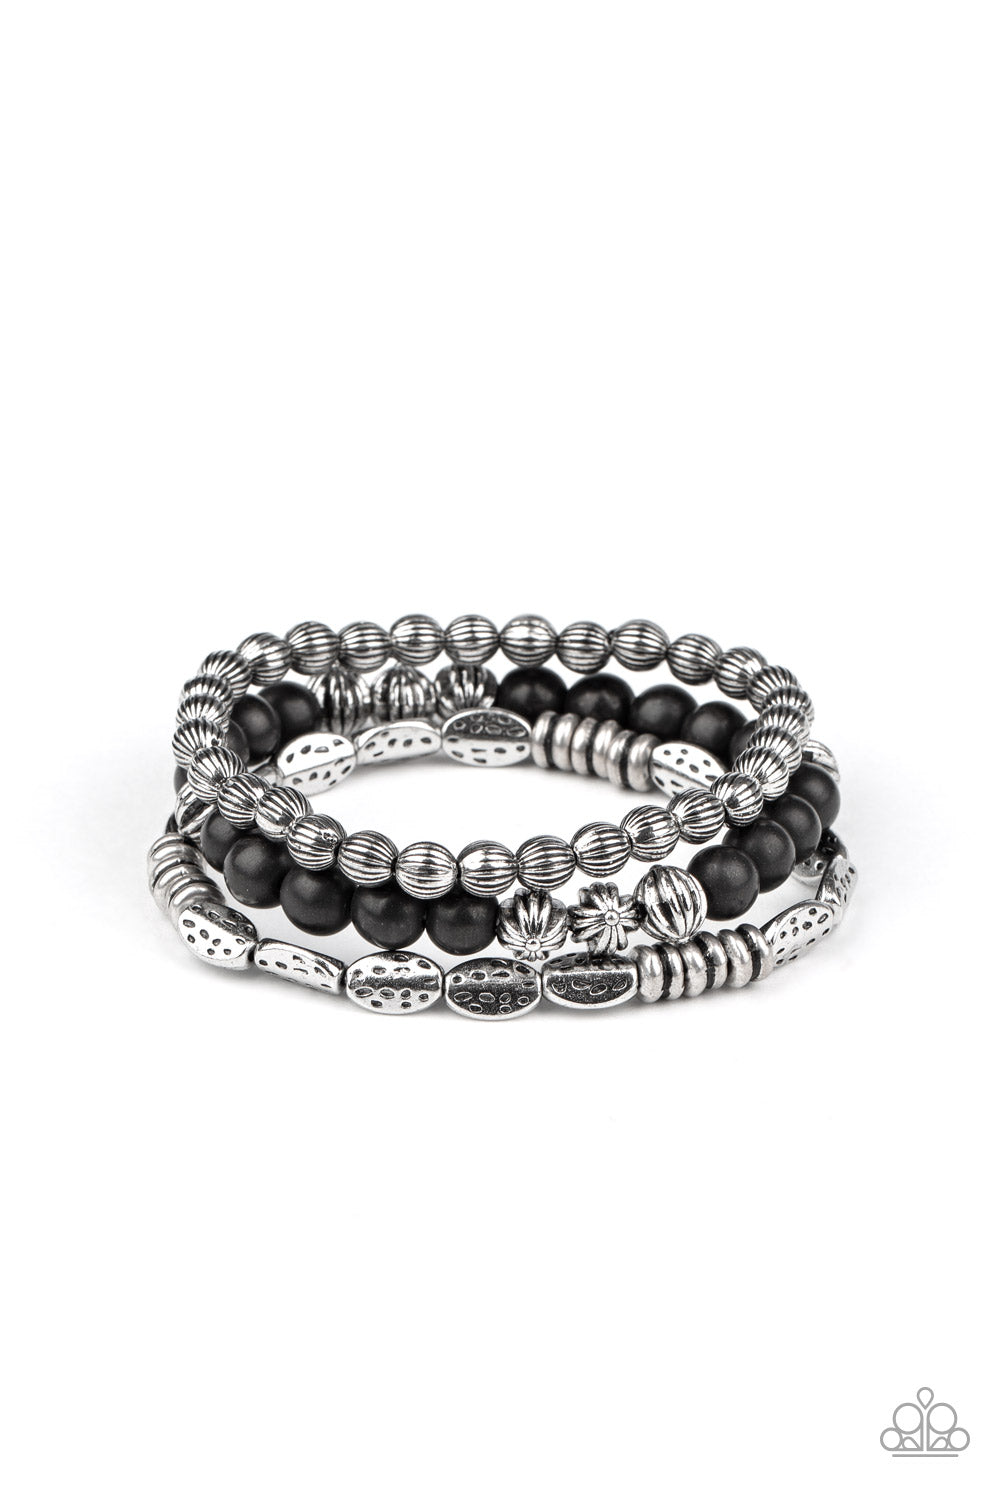 shop-sassy-affordable- black-bracelet-2-5-0320-paparazzi-accessories